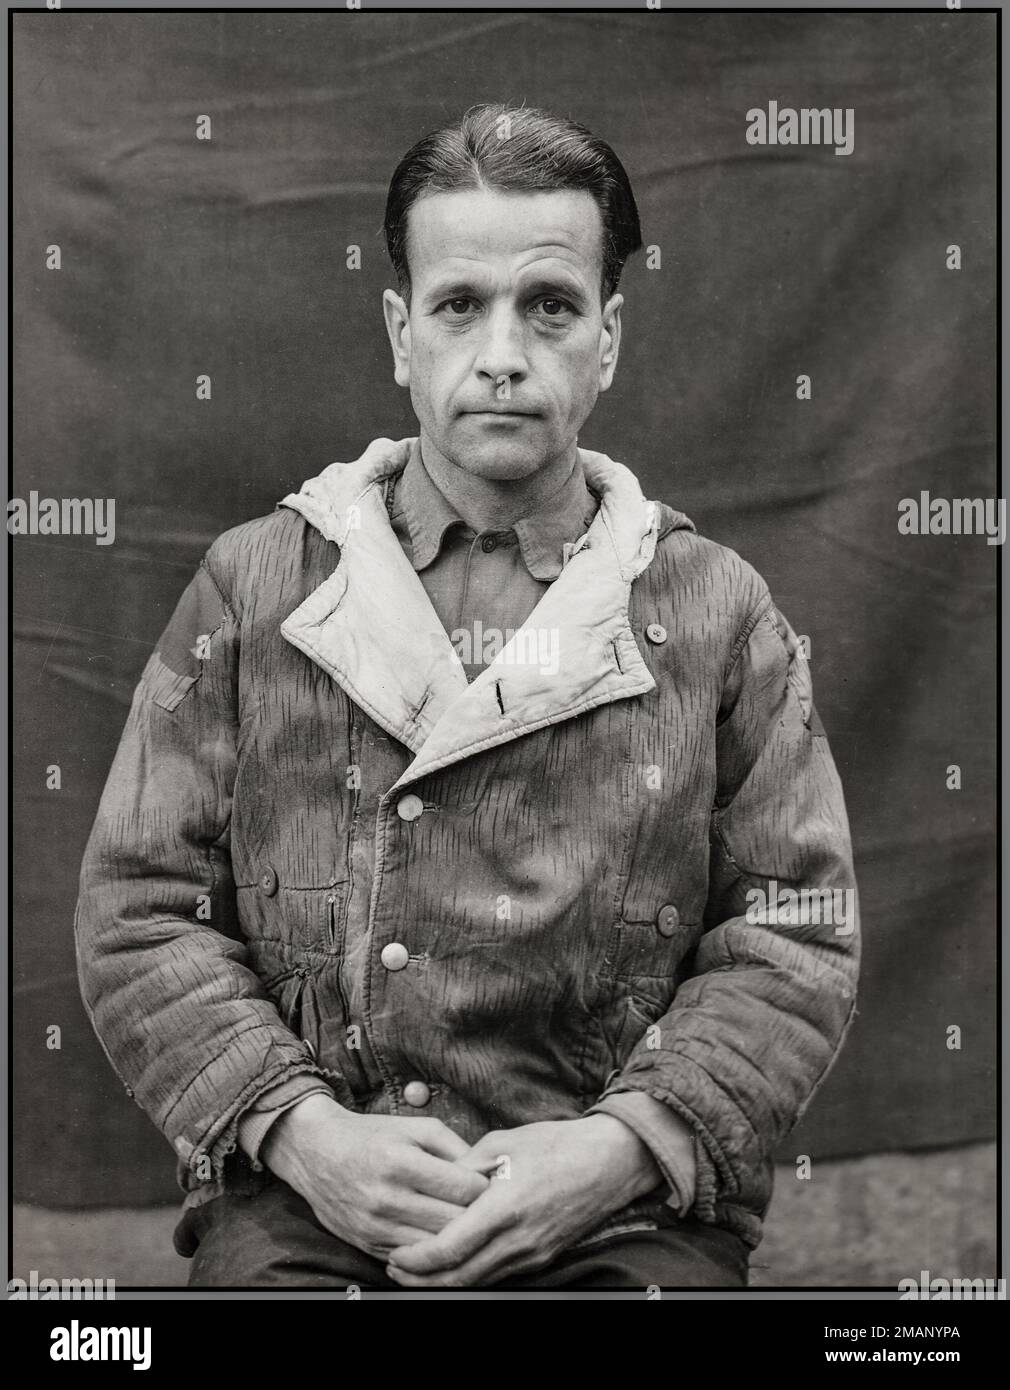 Nazi Waldemar Hoven (10. Februar 1903 – 2. Juni 1948) war Nazi und Arzt im Konzentrationslager Nazi Buchenwald. Hoven wurde am Ende des Zweiten Weltkriegs von den Alliierten verhaftet und als Angeklagter beim Ärztekurs, einem der Nürnberger Prozesse, vor Gericht gestellt. Er wurde wegen Kriegsverbrechen, Verbrechen gegen die Menschlichkeit und der Mitgliedschaft in einer kriminellen Organisation für schuldig befunden. Er wurde am 2. Juni 1948 im Landsberg Gefängnis in Bayern zum Tode verurteilt und gehängt. Stockfoto